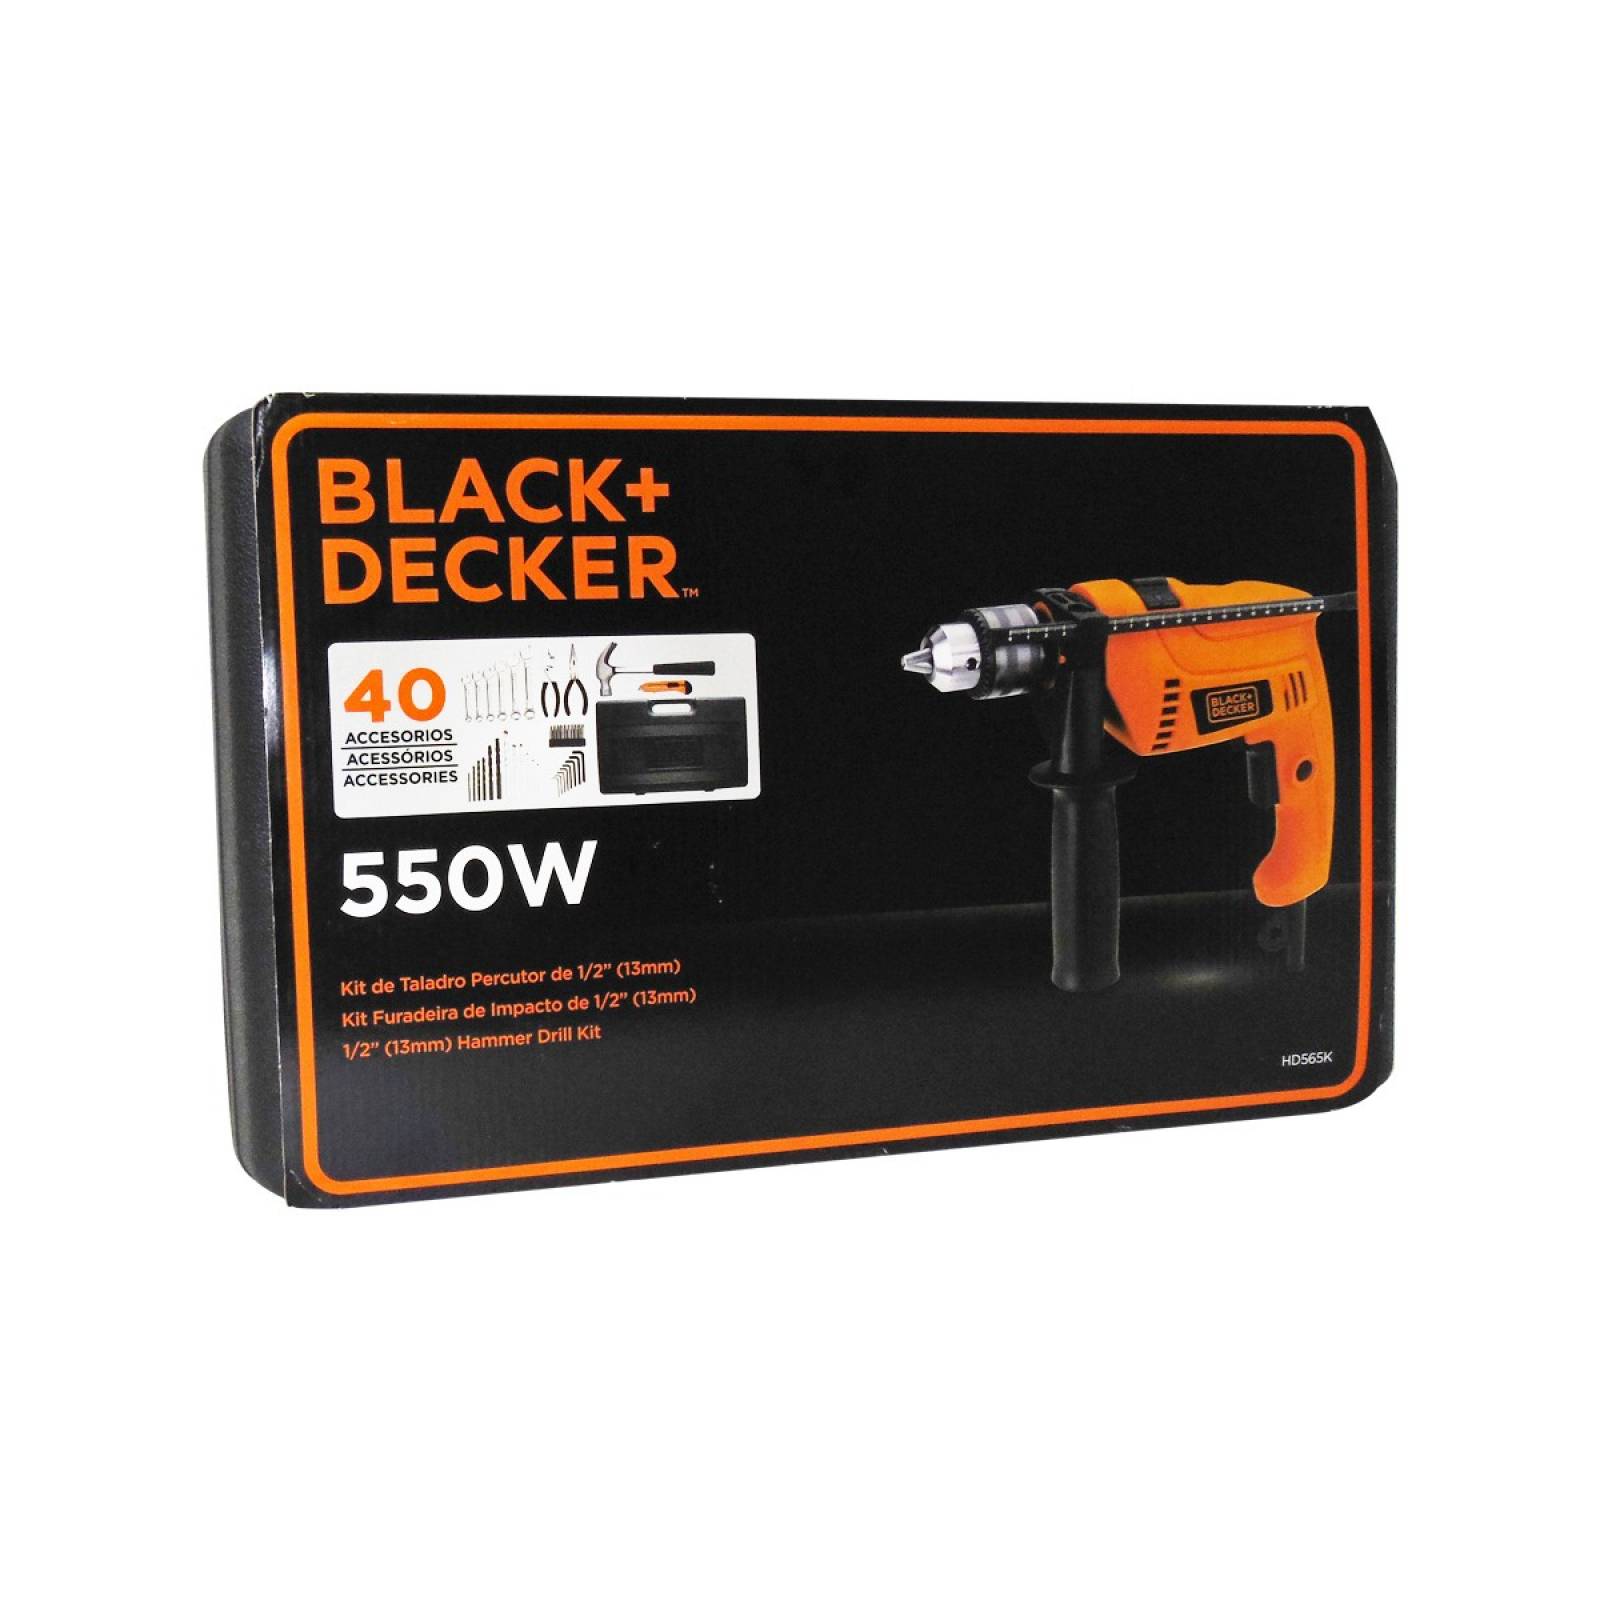 Kit de Taladro Percutor 1/2" 40 Herr HD565K Black & Decker